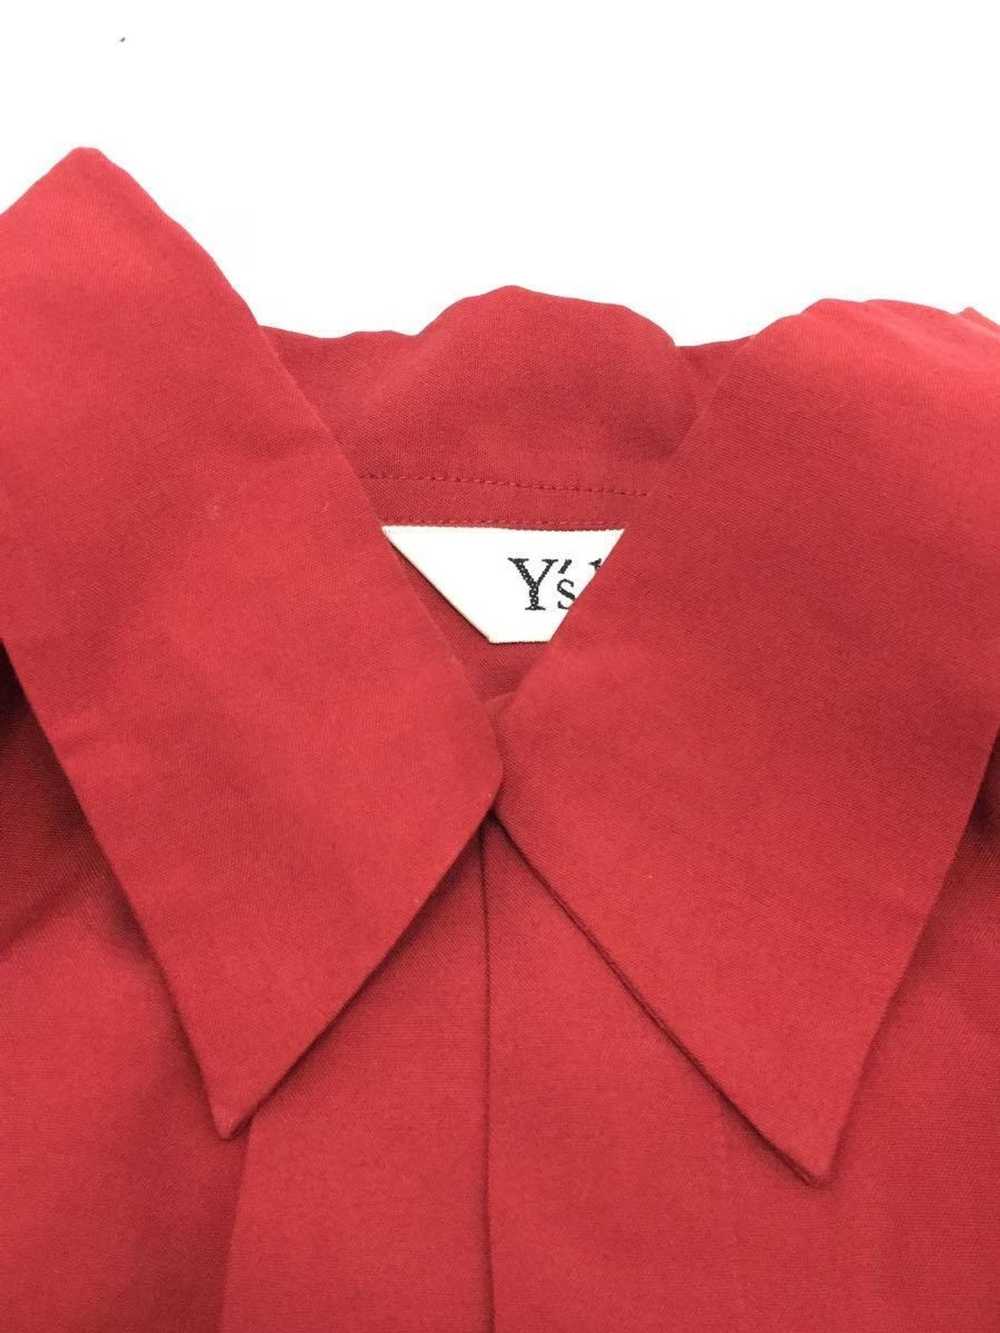 Yohji Yamamoto × Ys (Yamamoto) Double Button Shirt - image 3